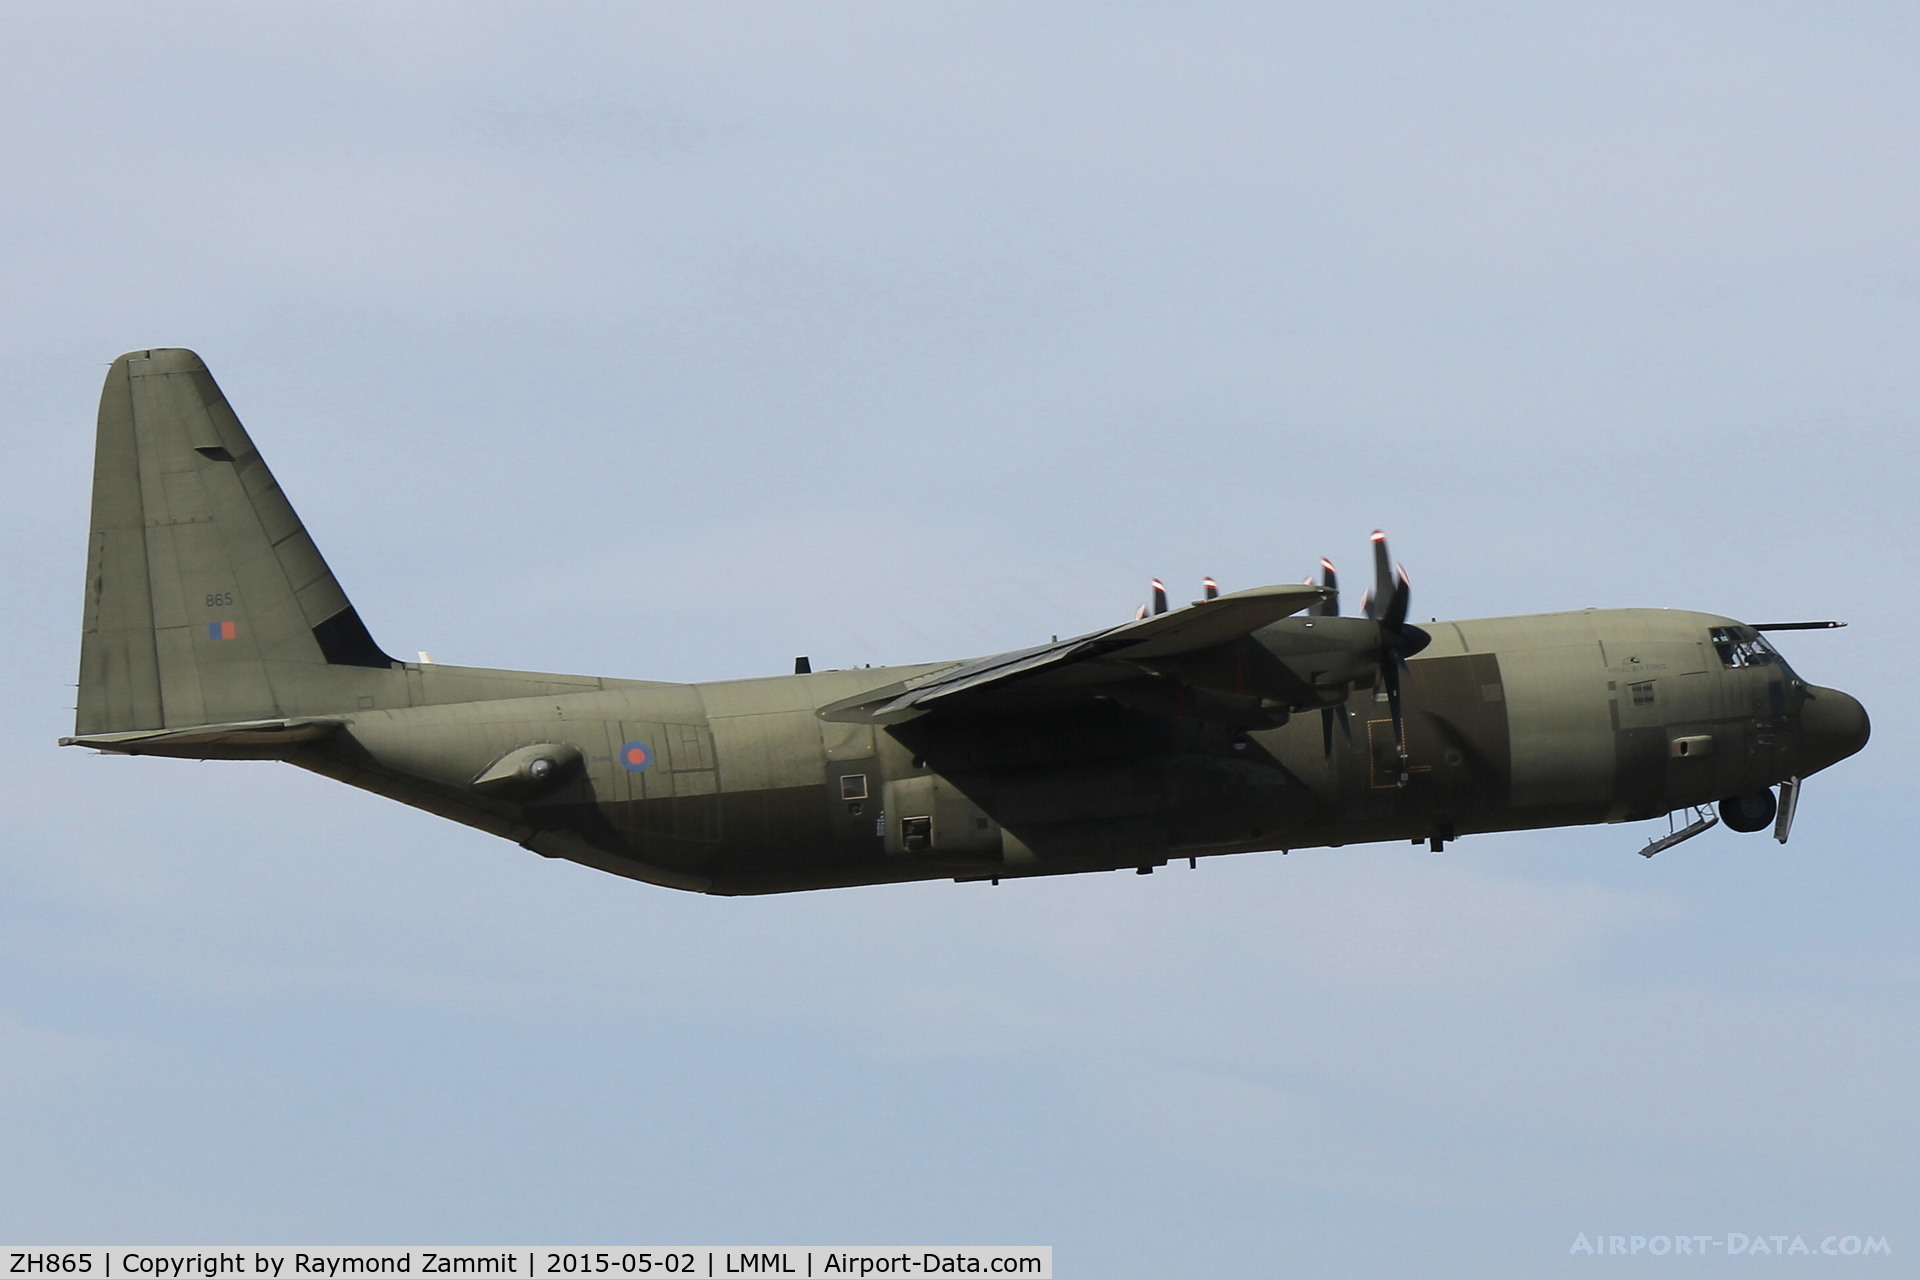 ZH865, 1996 Lockheed Martin C-130J-30 Hercules C.4 C/N 382-5408, C-130J Hercules ZH865 Royal Air Force